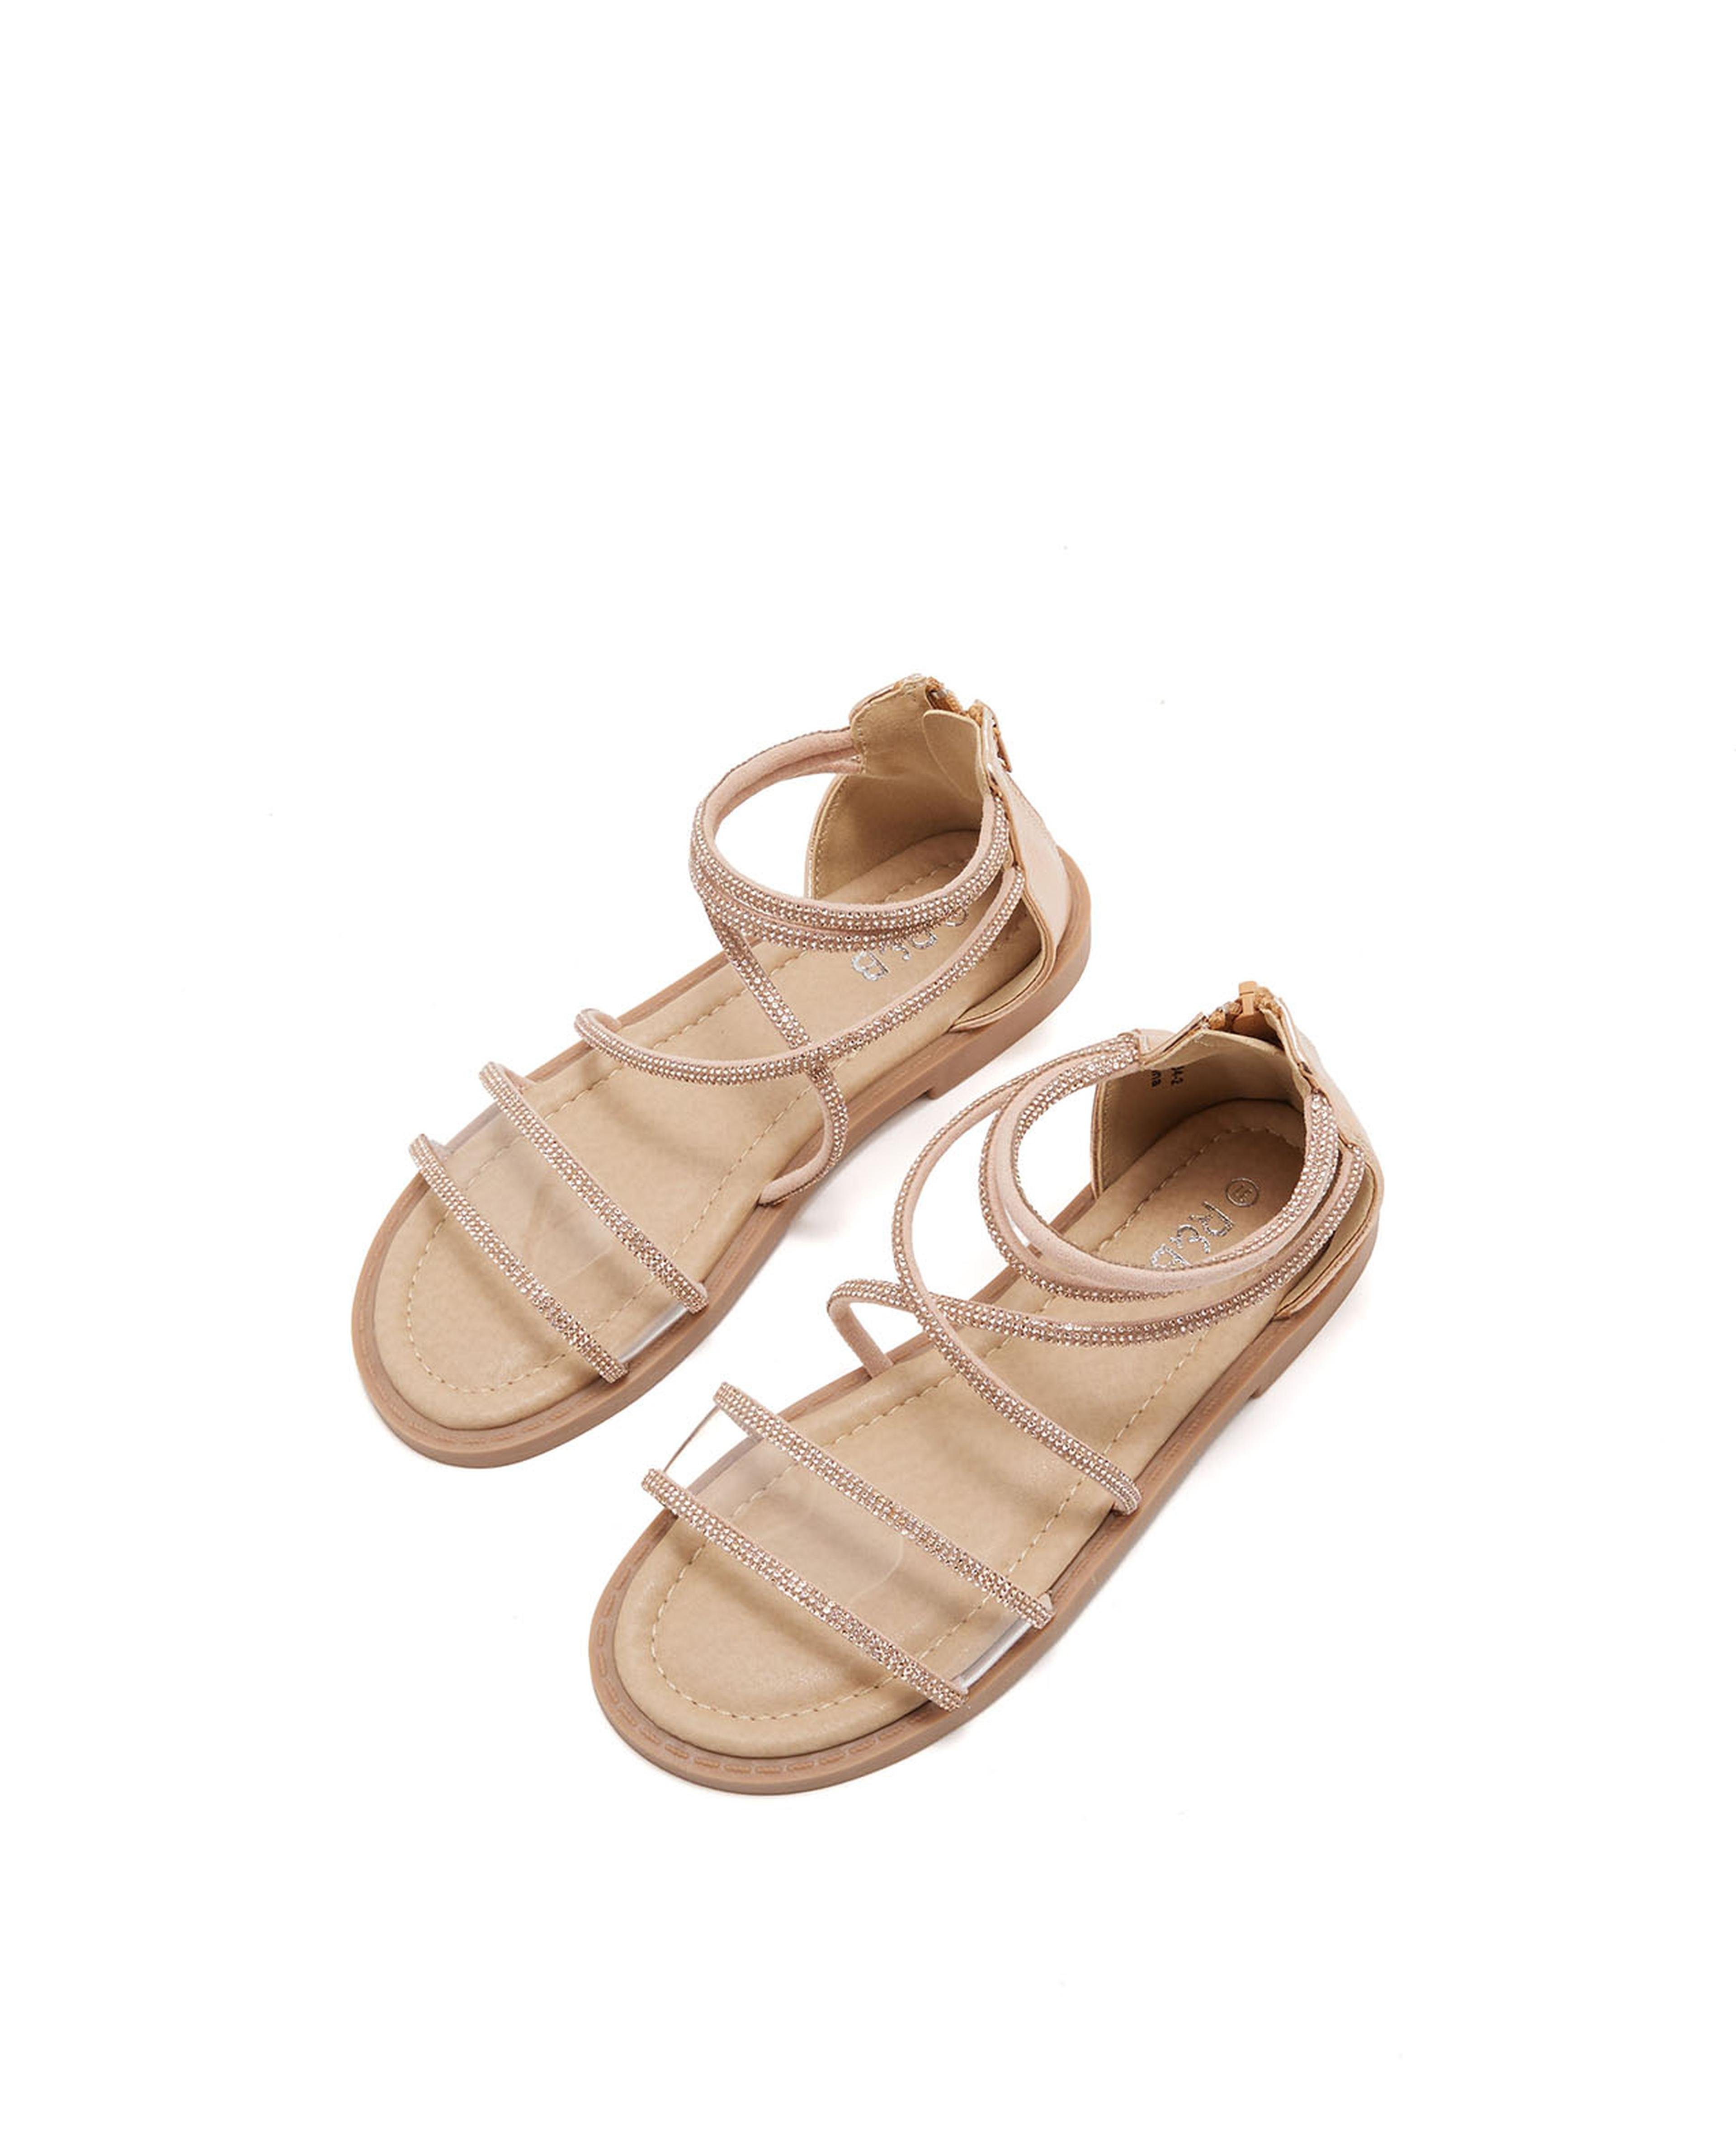 Embellished Gladiator Sandals